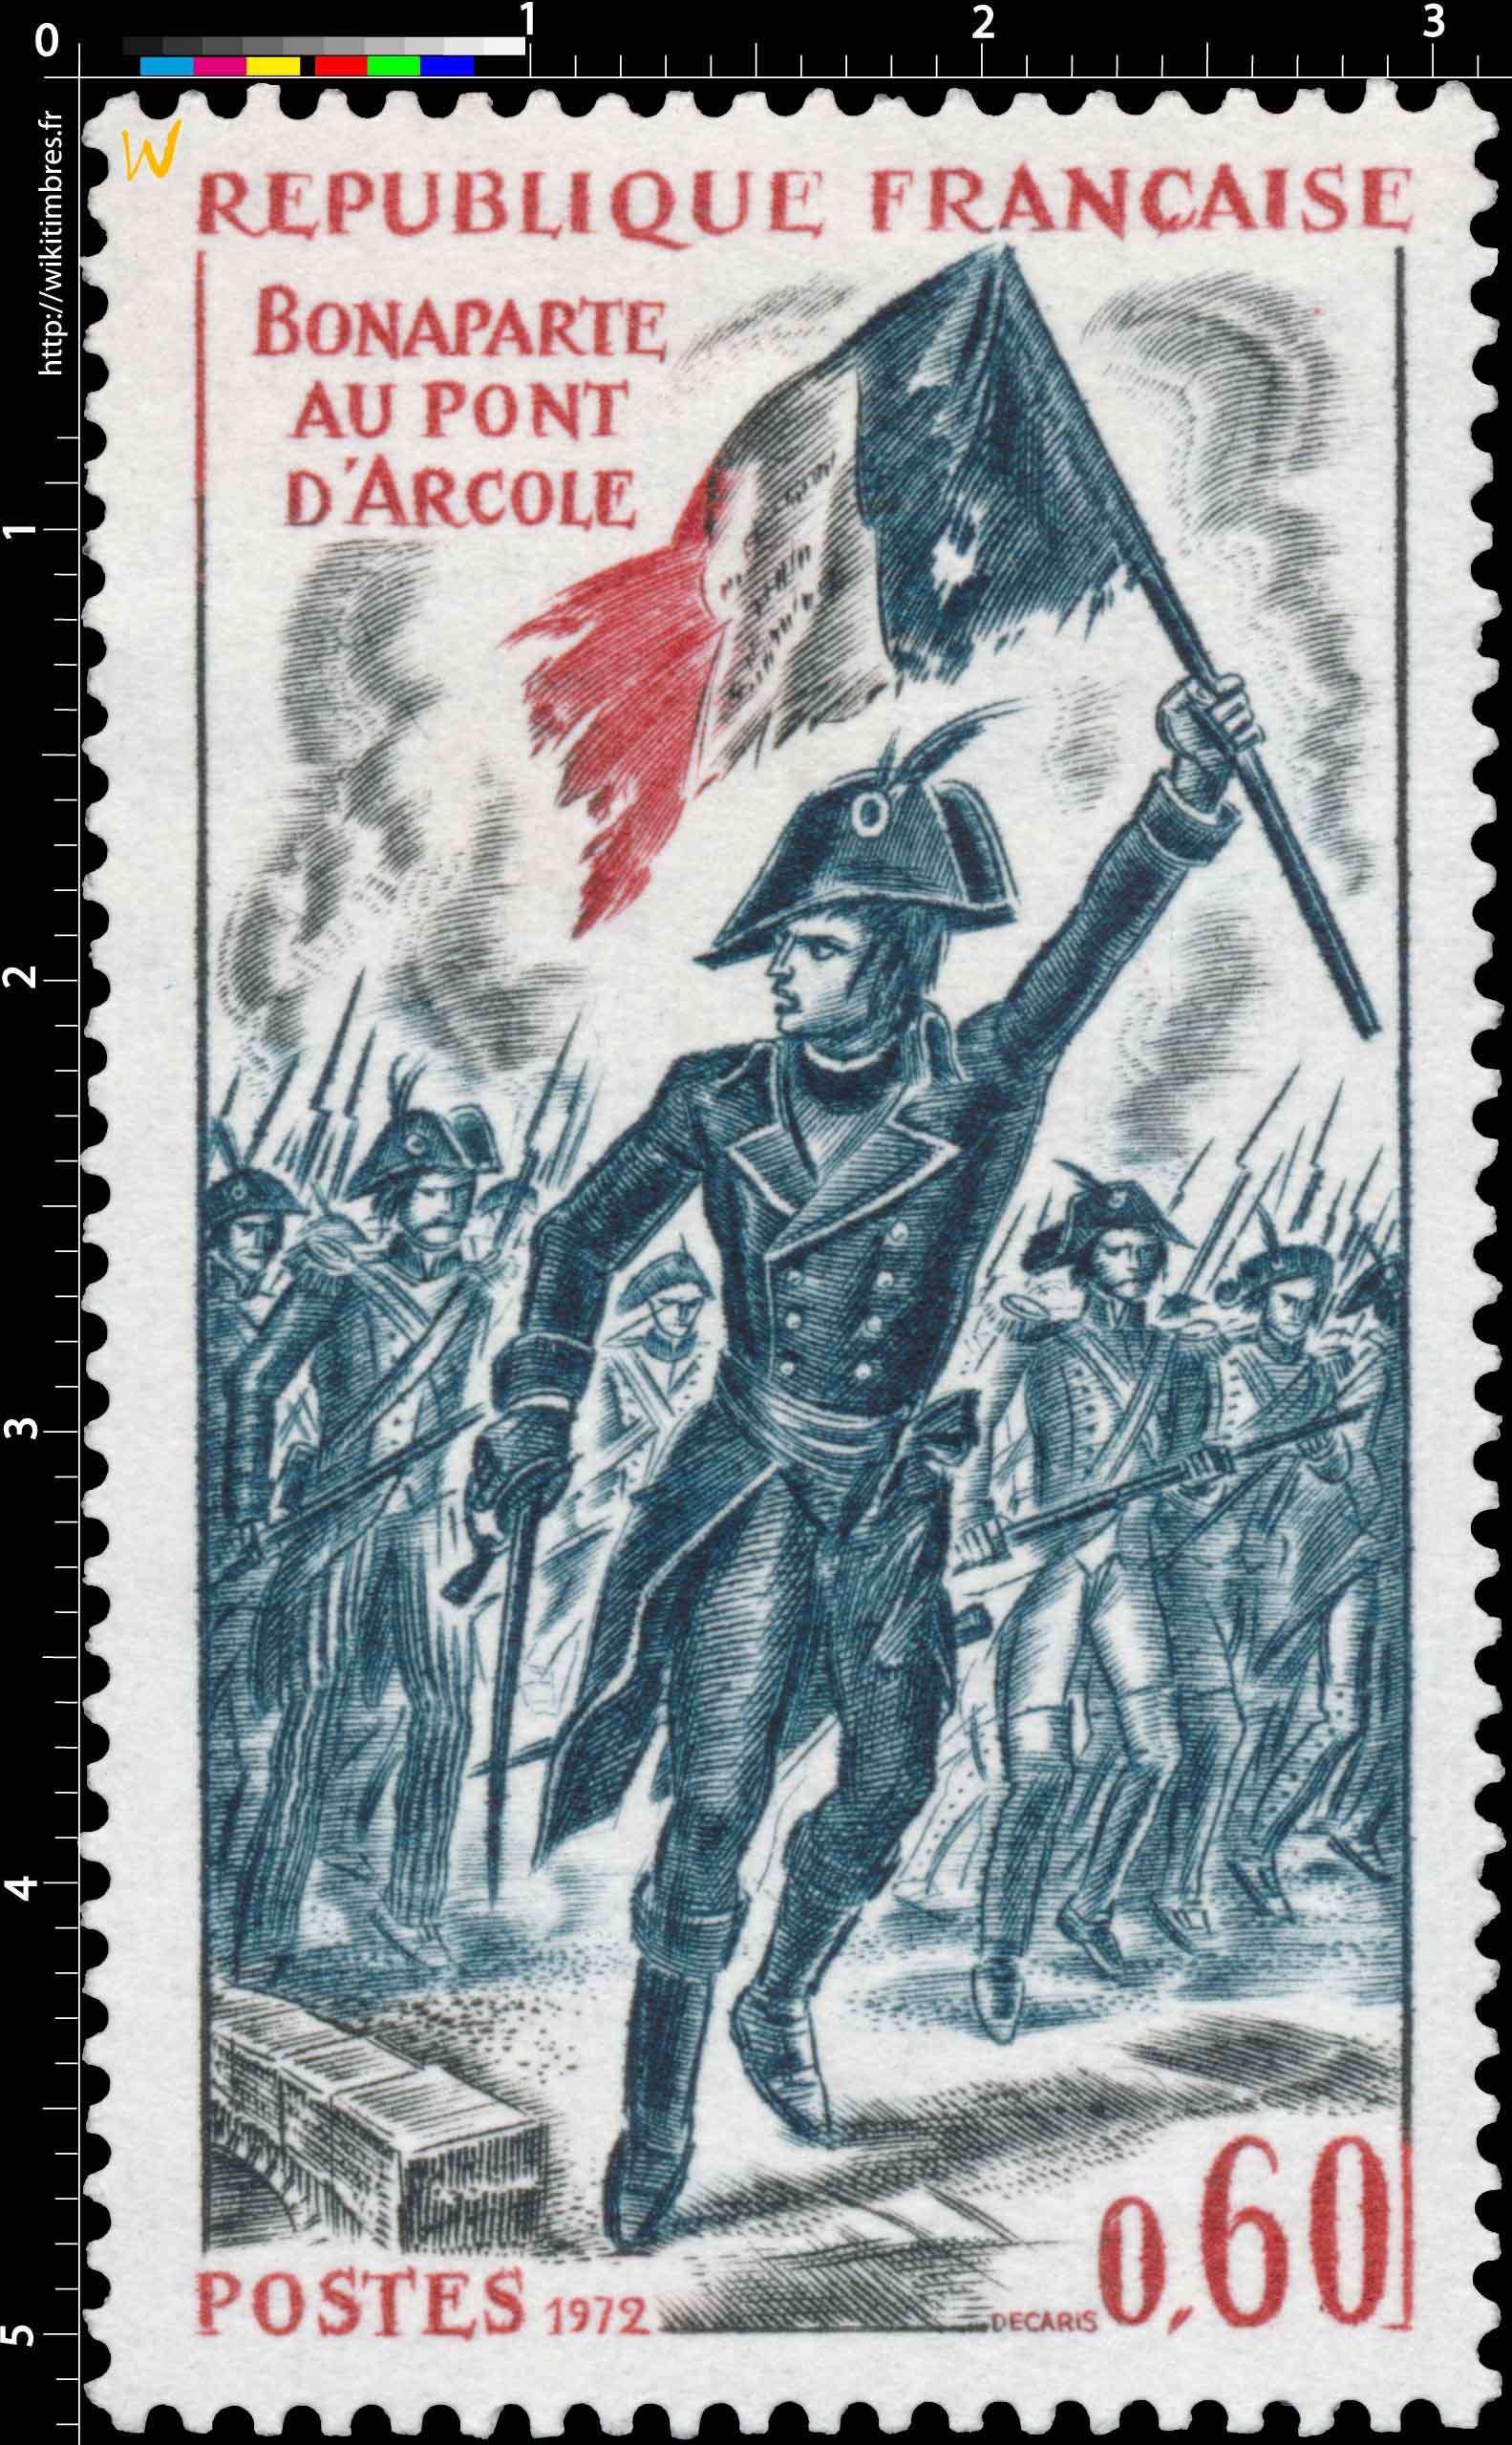 1972 BONAPARTE AU PONT D'ARCOLE